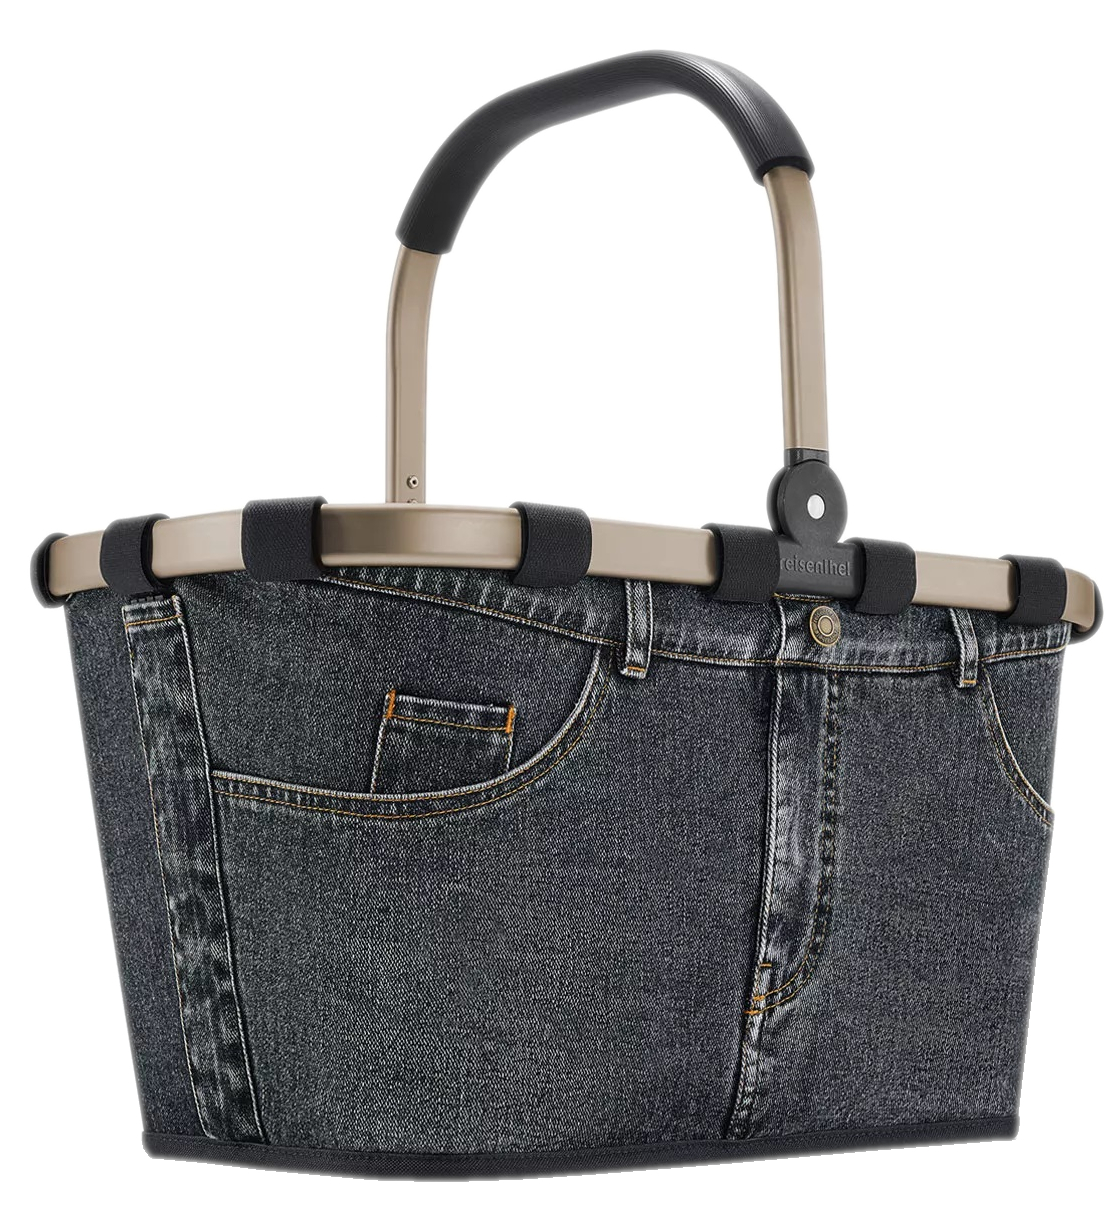 Reisenthel  'carrybag frame jeans' Einkaufskorb mit Alurahmen dark grey